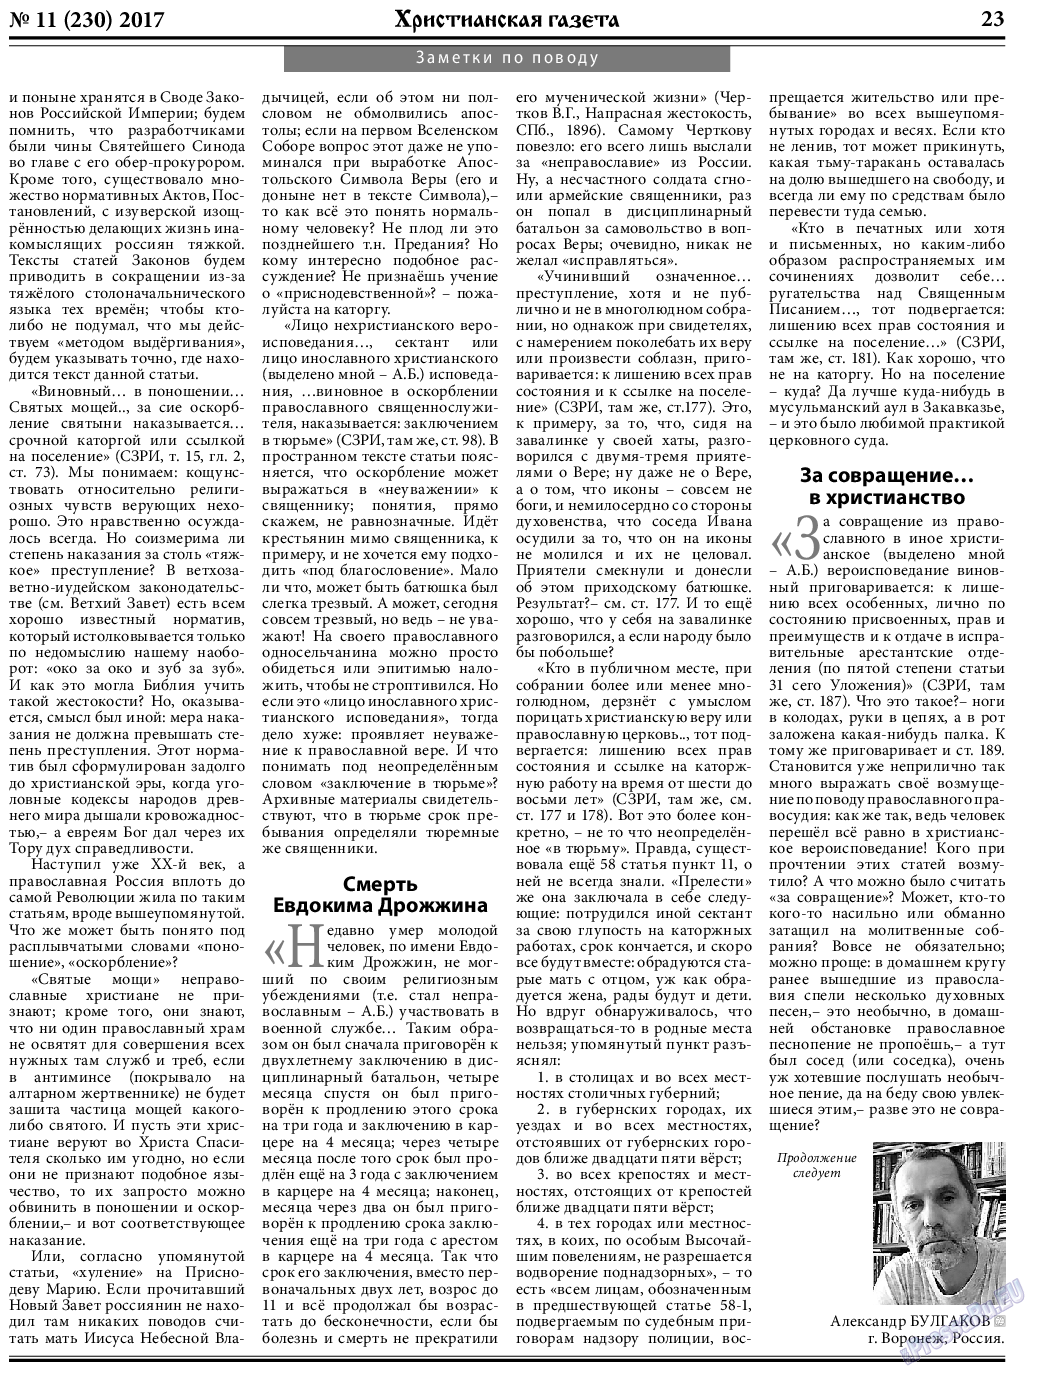 Христианская газета (газета). 2017 год, номер 11, стр. 23